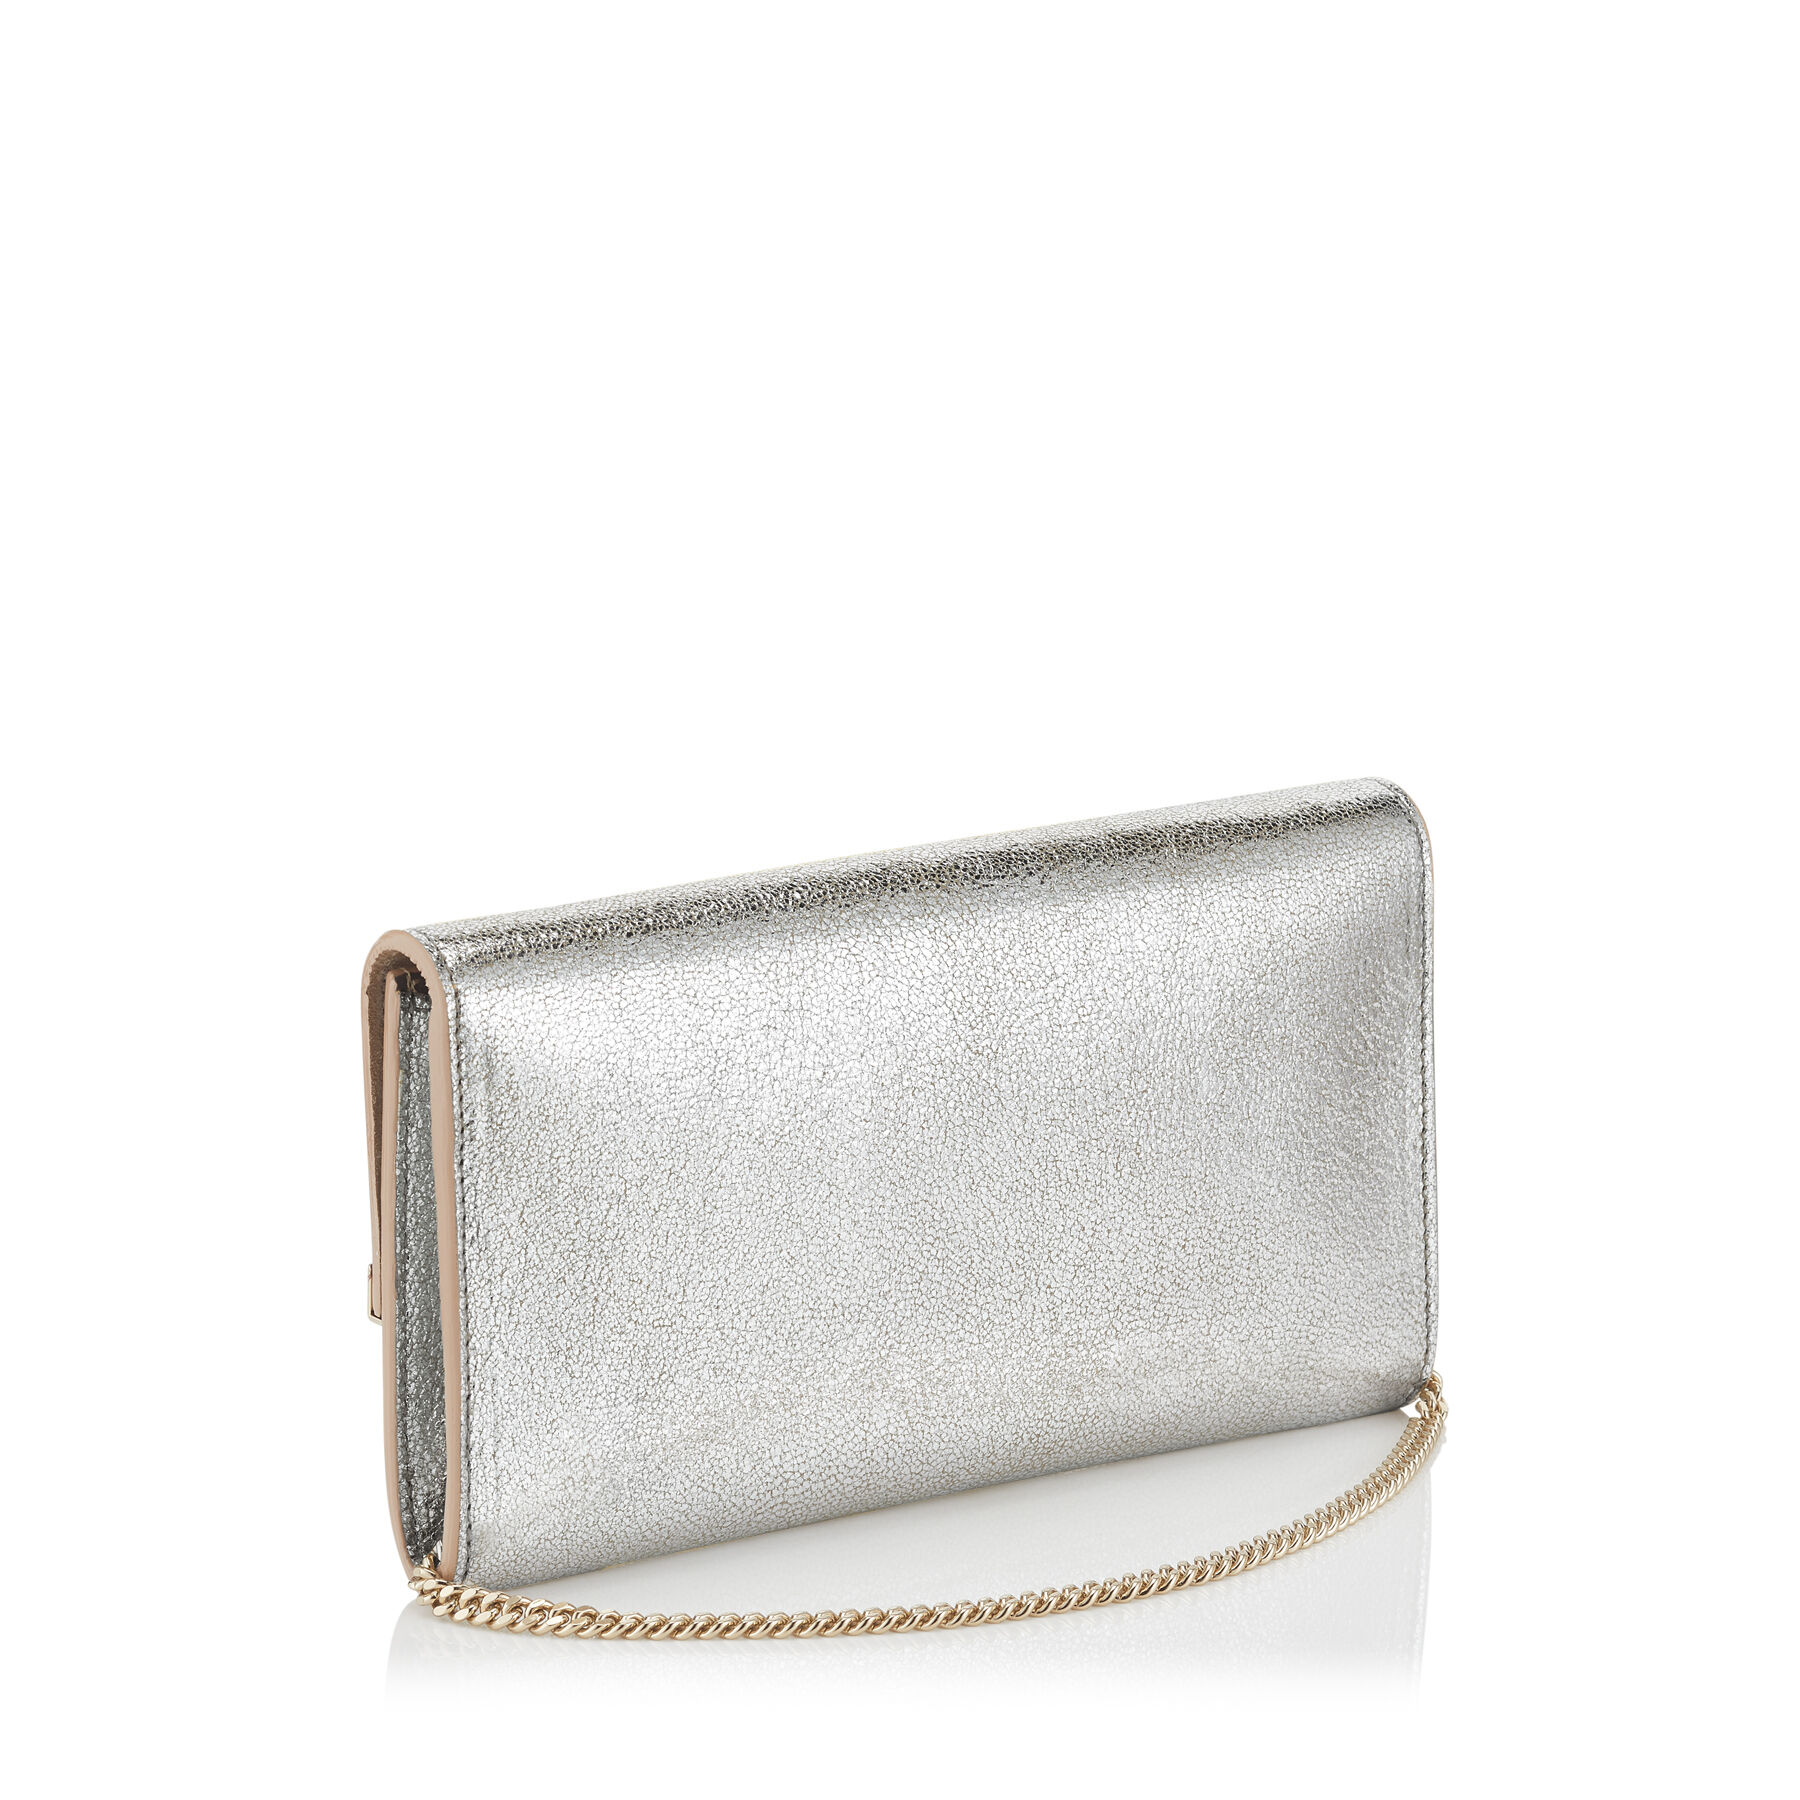 Champagne Glitter Leather Clutch Bag | Emmie | Pre Fall 18 | JIMMY CHOO